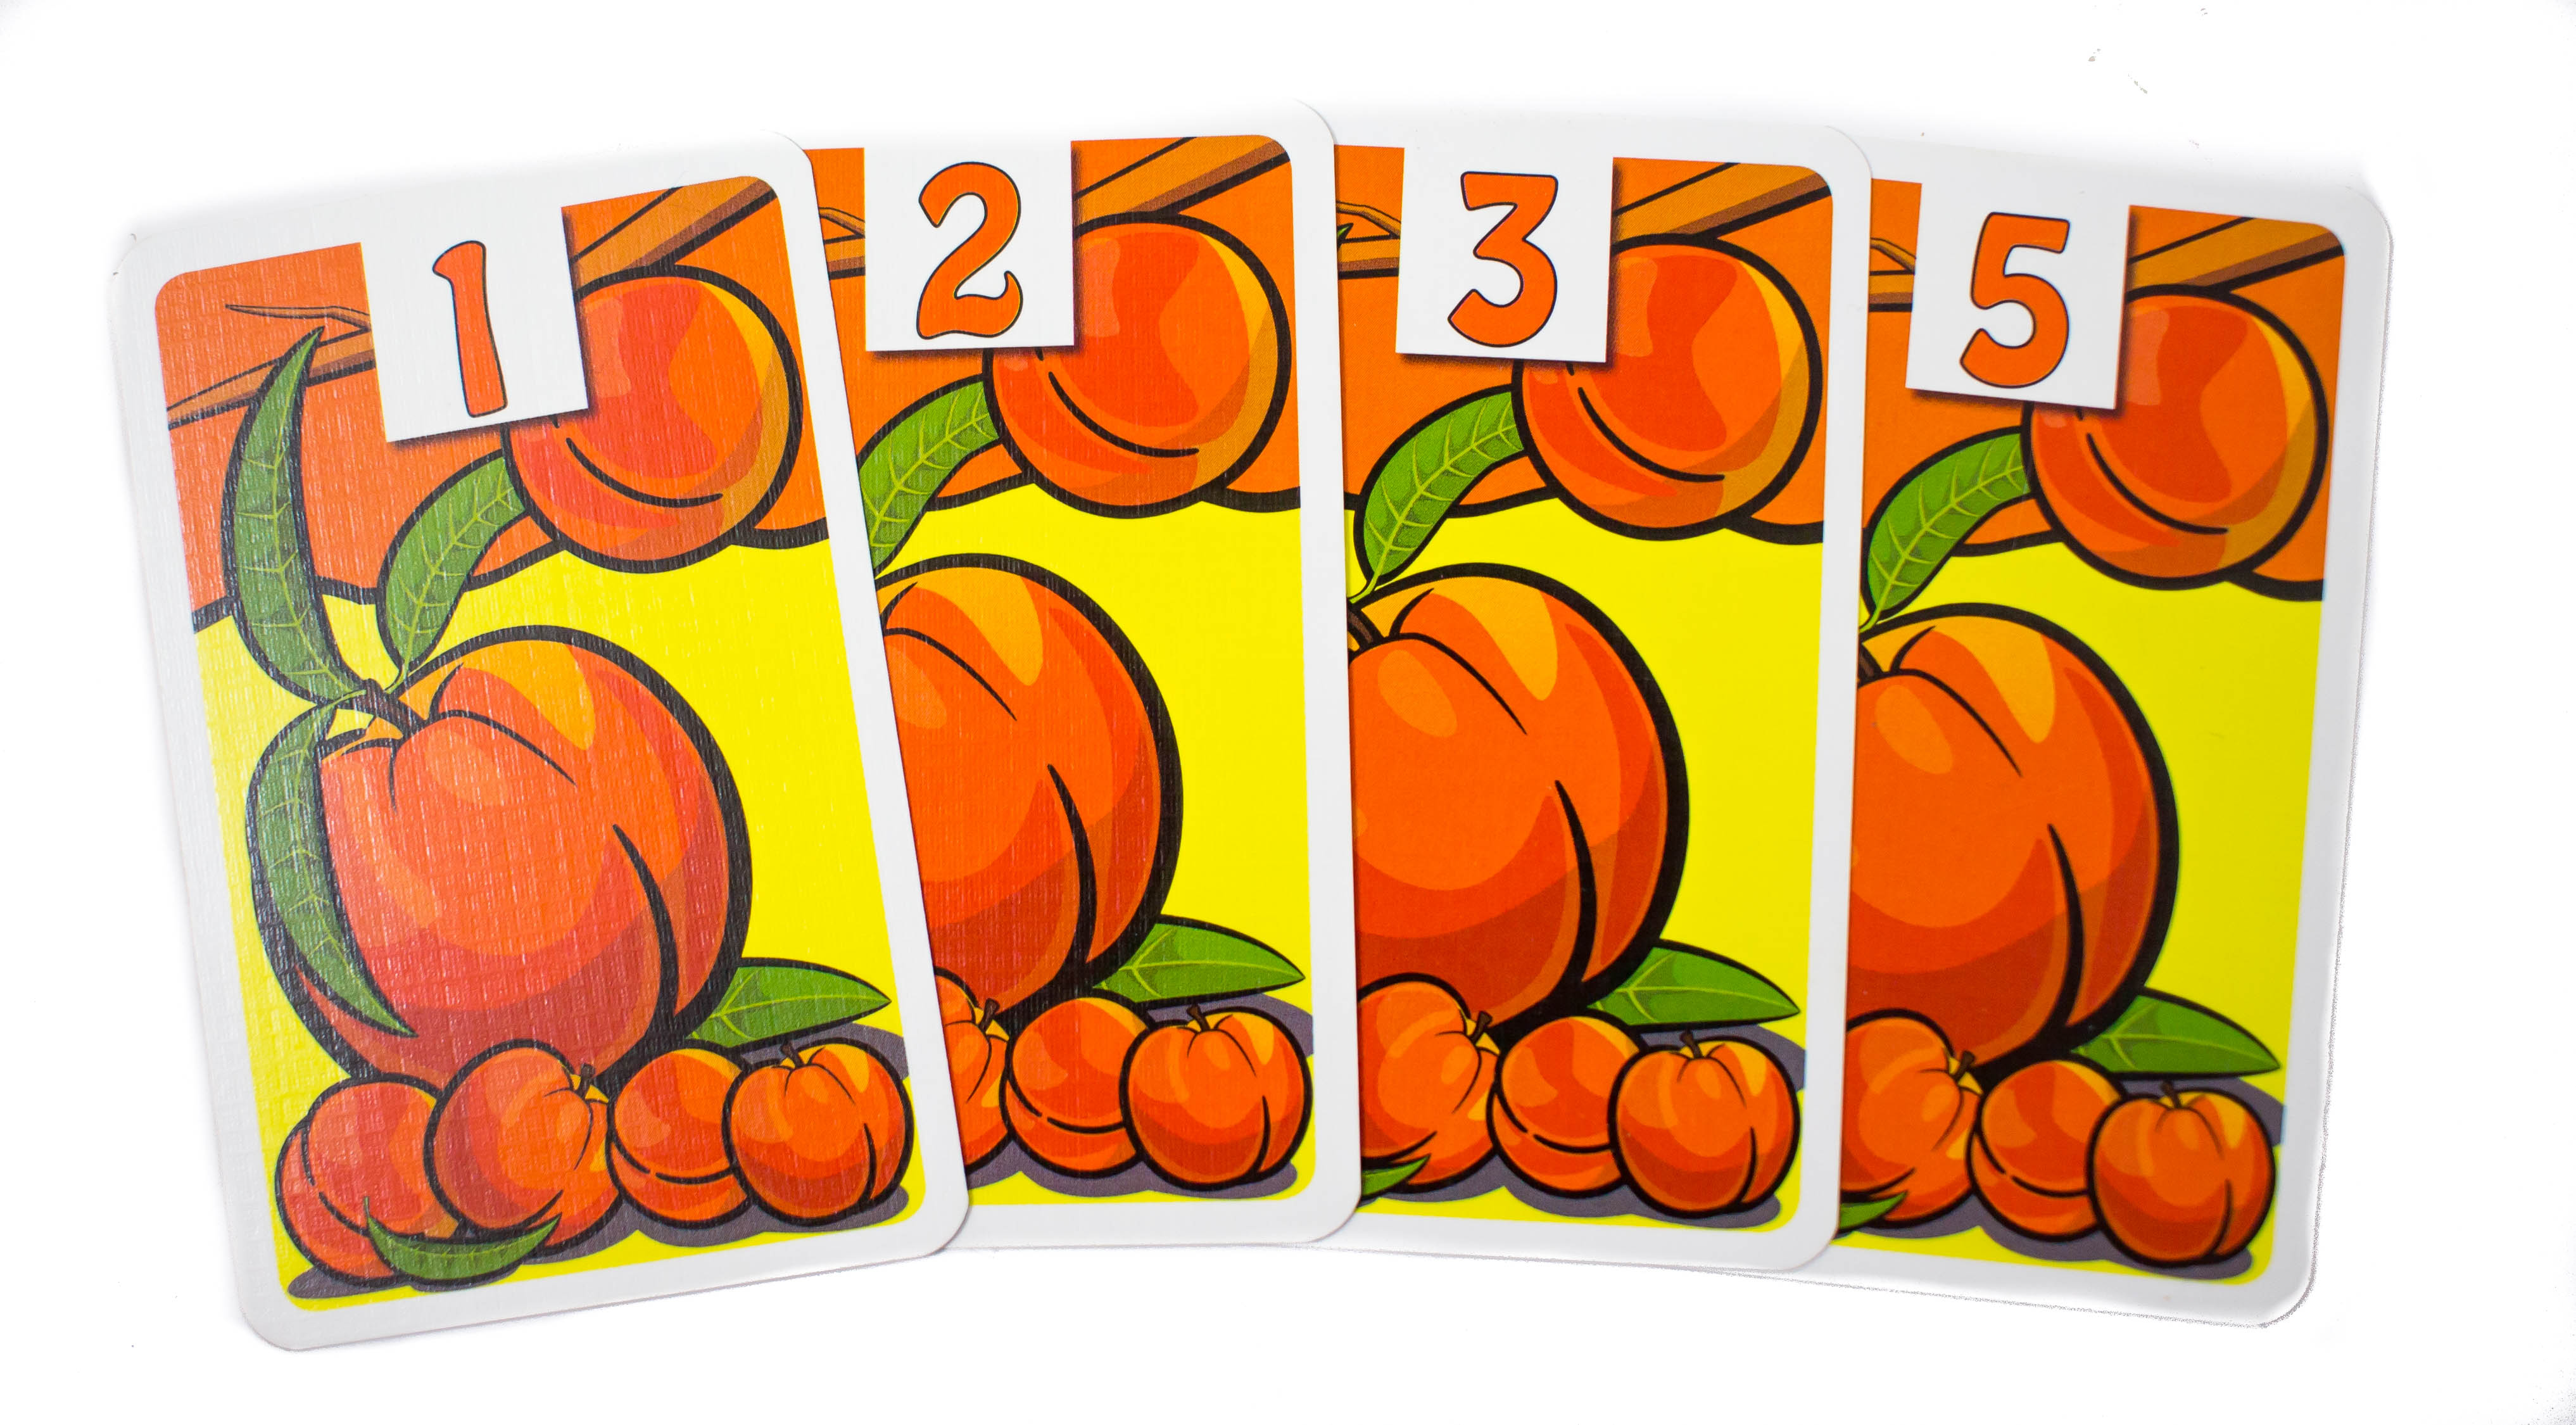 Mivel a sorból hiányzik egy (a négyes), így nem jár a maximális pontszám ( 11) csak a három kártyából álló sorozat öszegyűjtéséért megérdemelt 5 pont. 